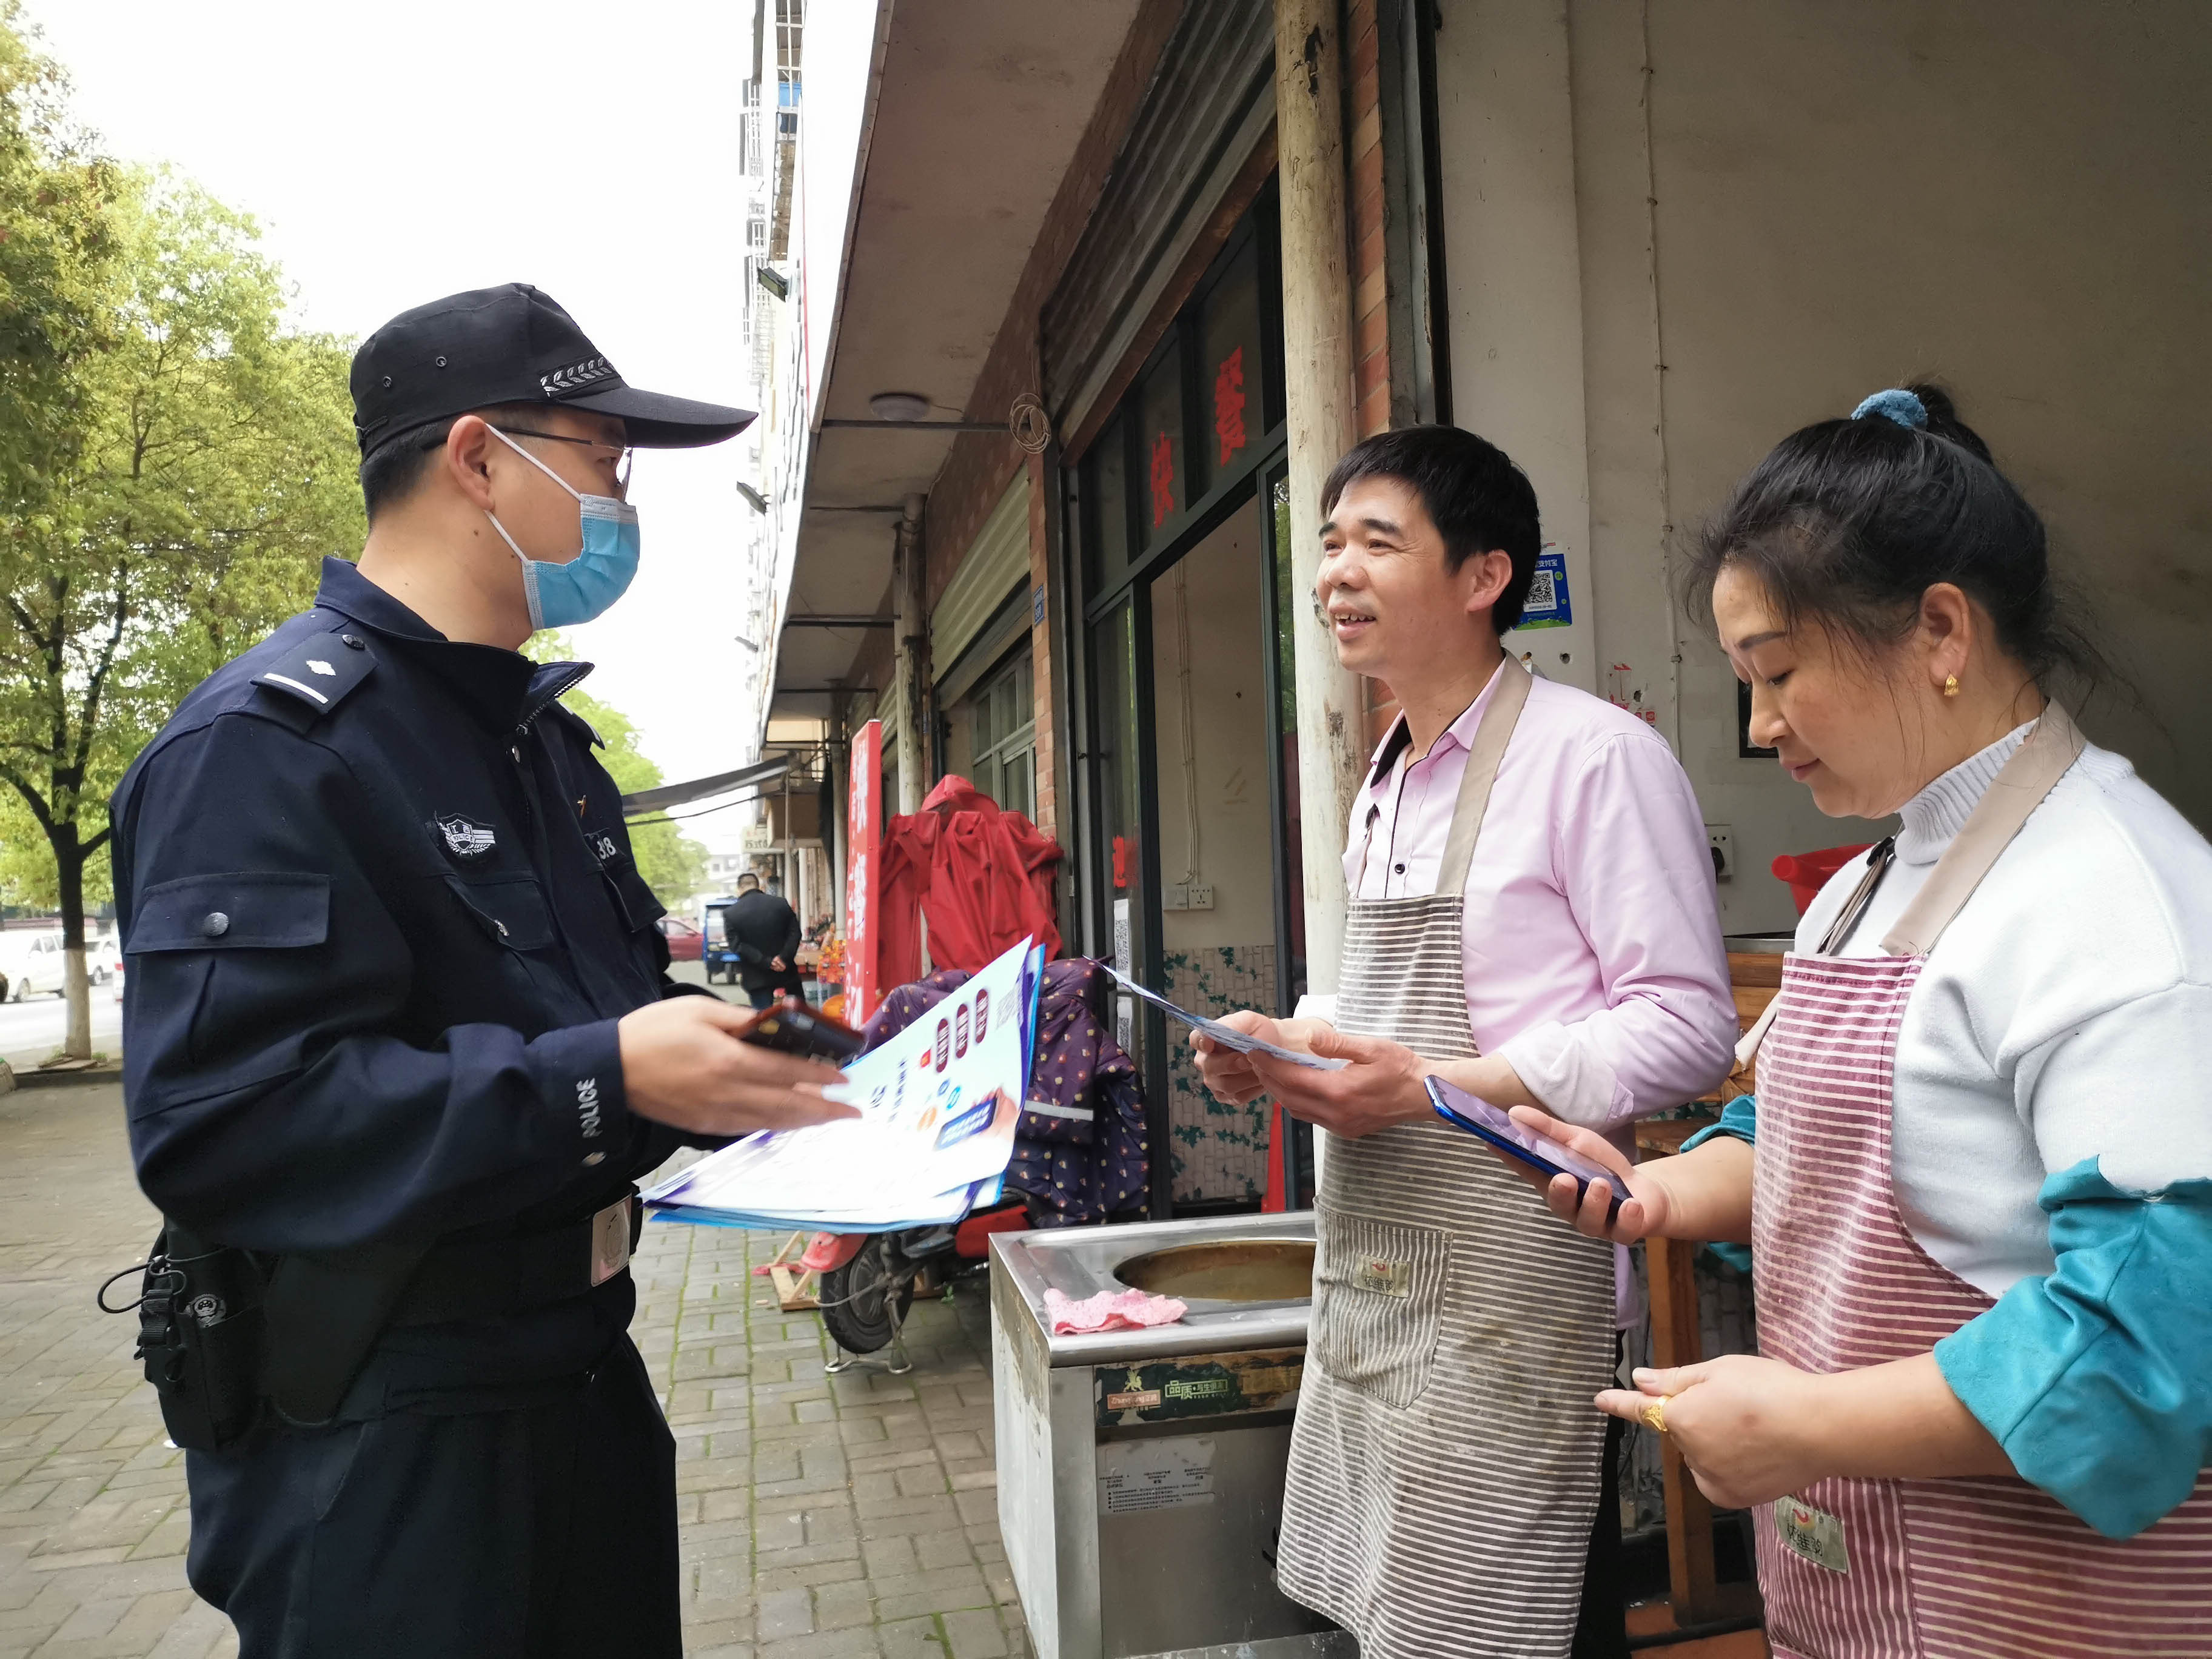 奉新县赤岸镇派出所民警在向居民宣传防电信诈骗知识。（夏文 摄）